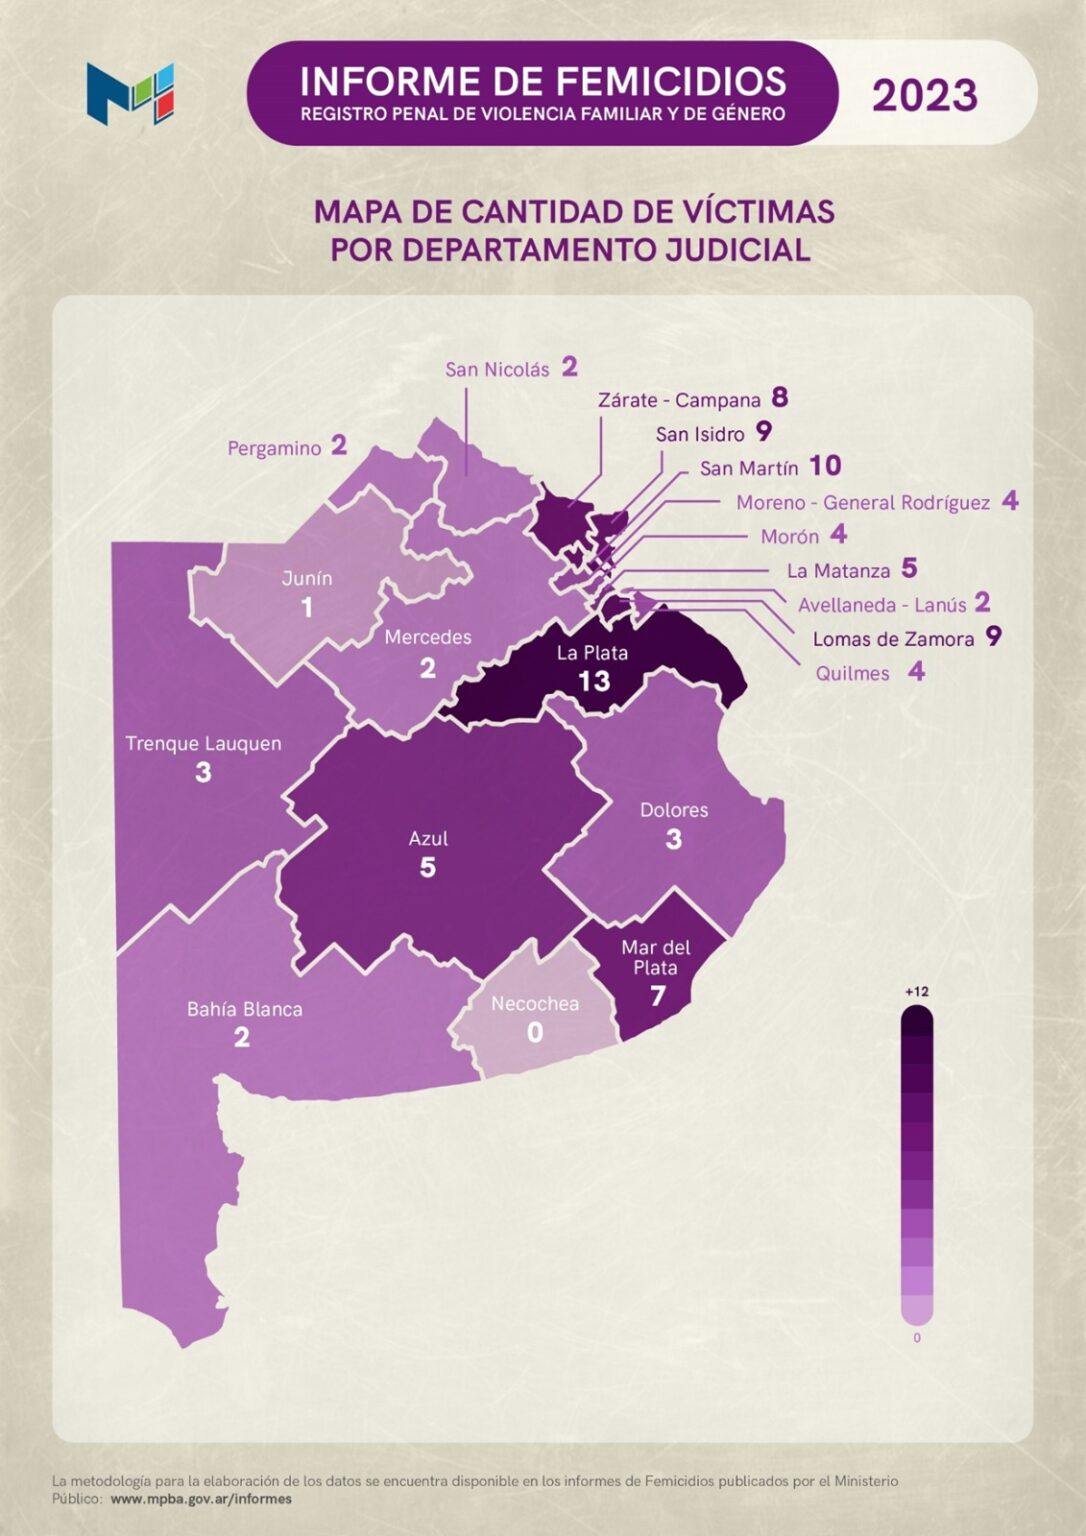 Aumentaron los femicidios en la Provincia de Buenos Aires, en el Departamento Judicial Quilmes hubo 4 mujeres asesinadas en 2023